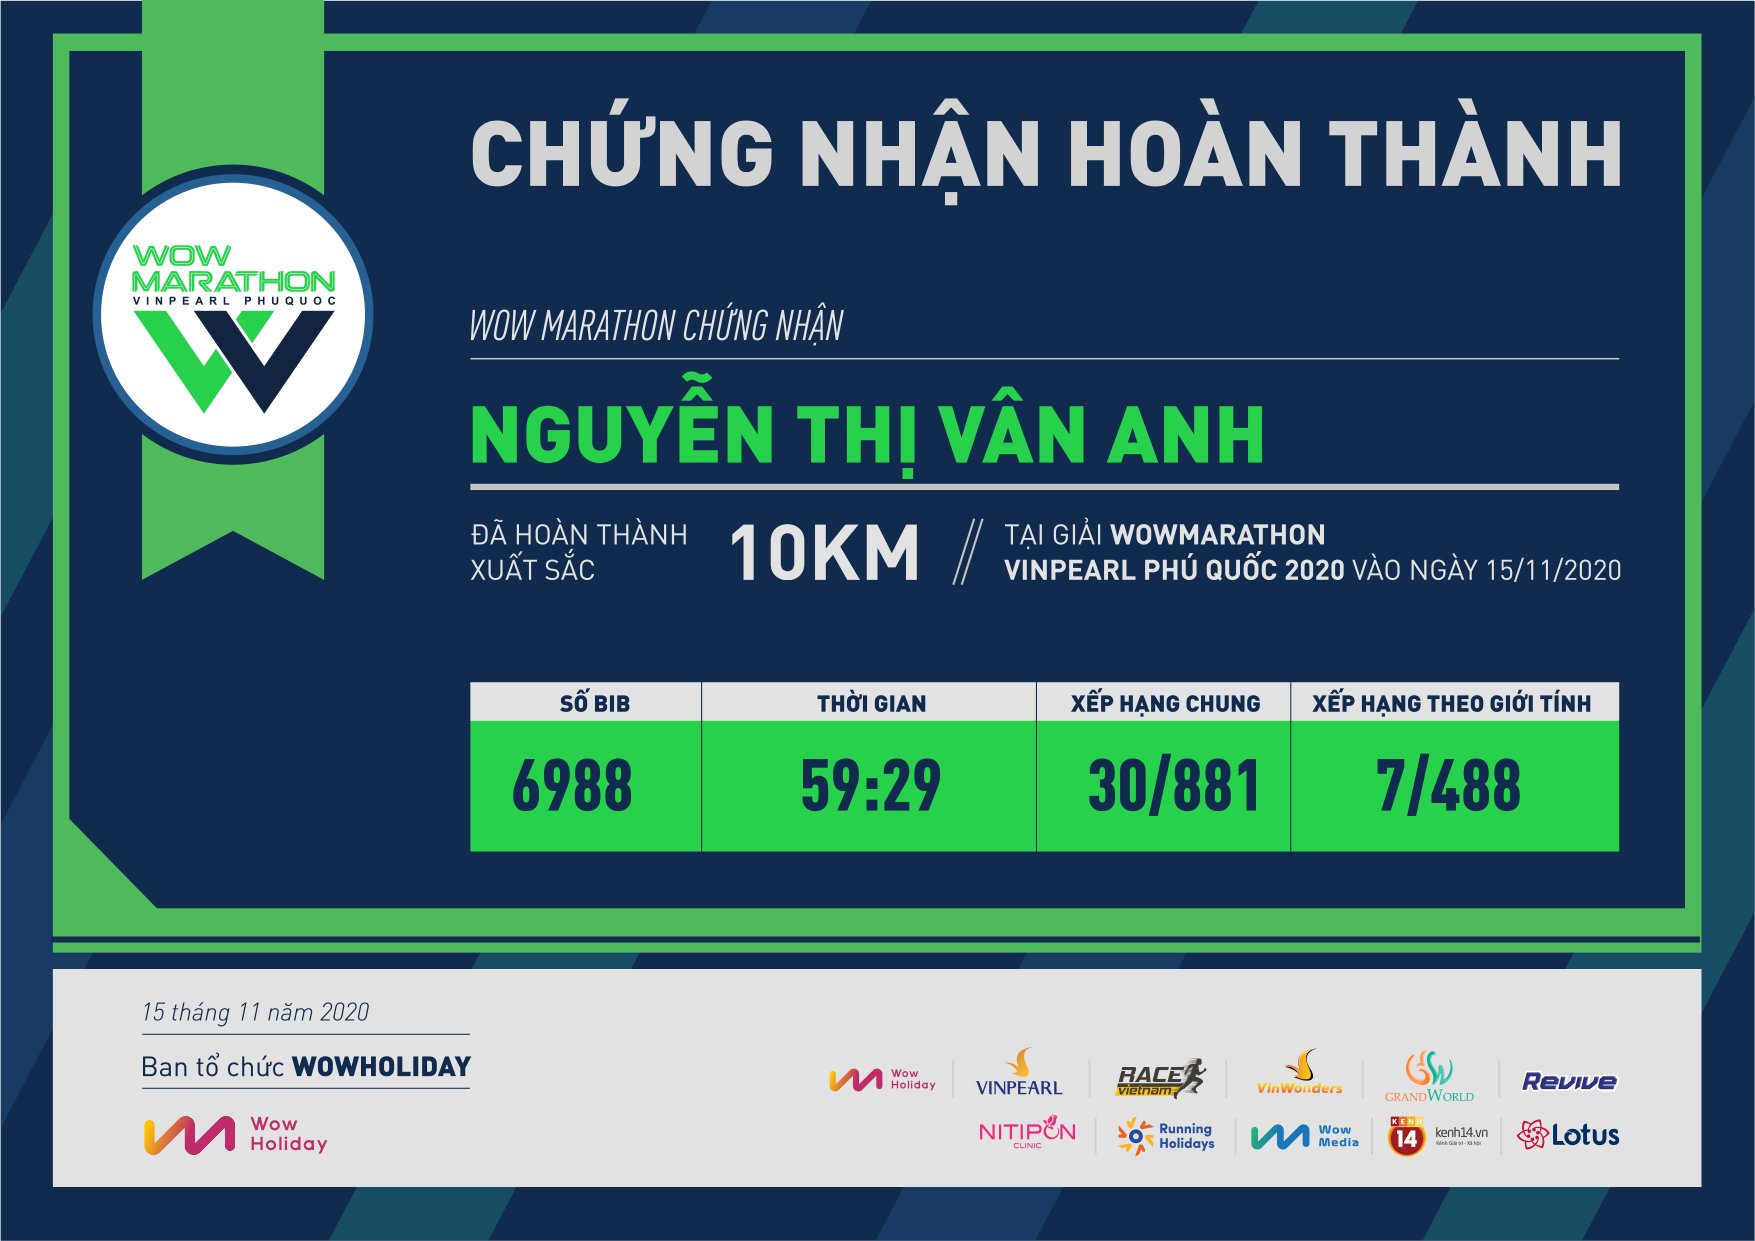 6988 - Nguyễn thị Vân anh